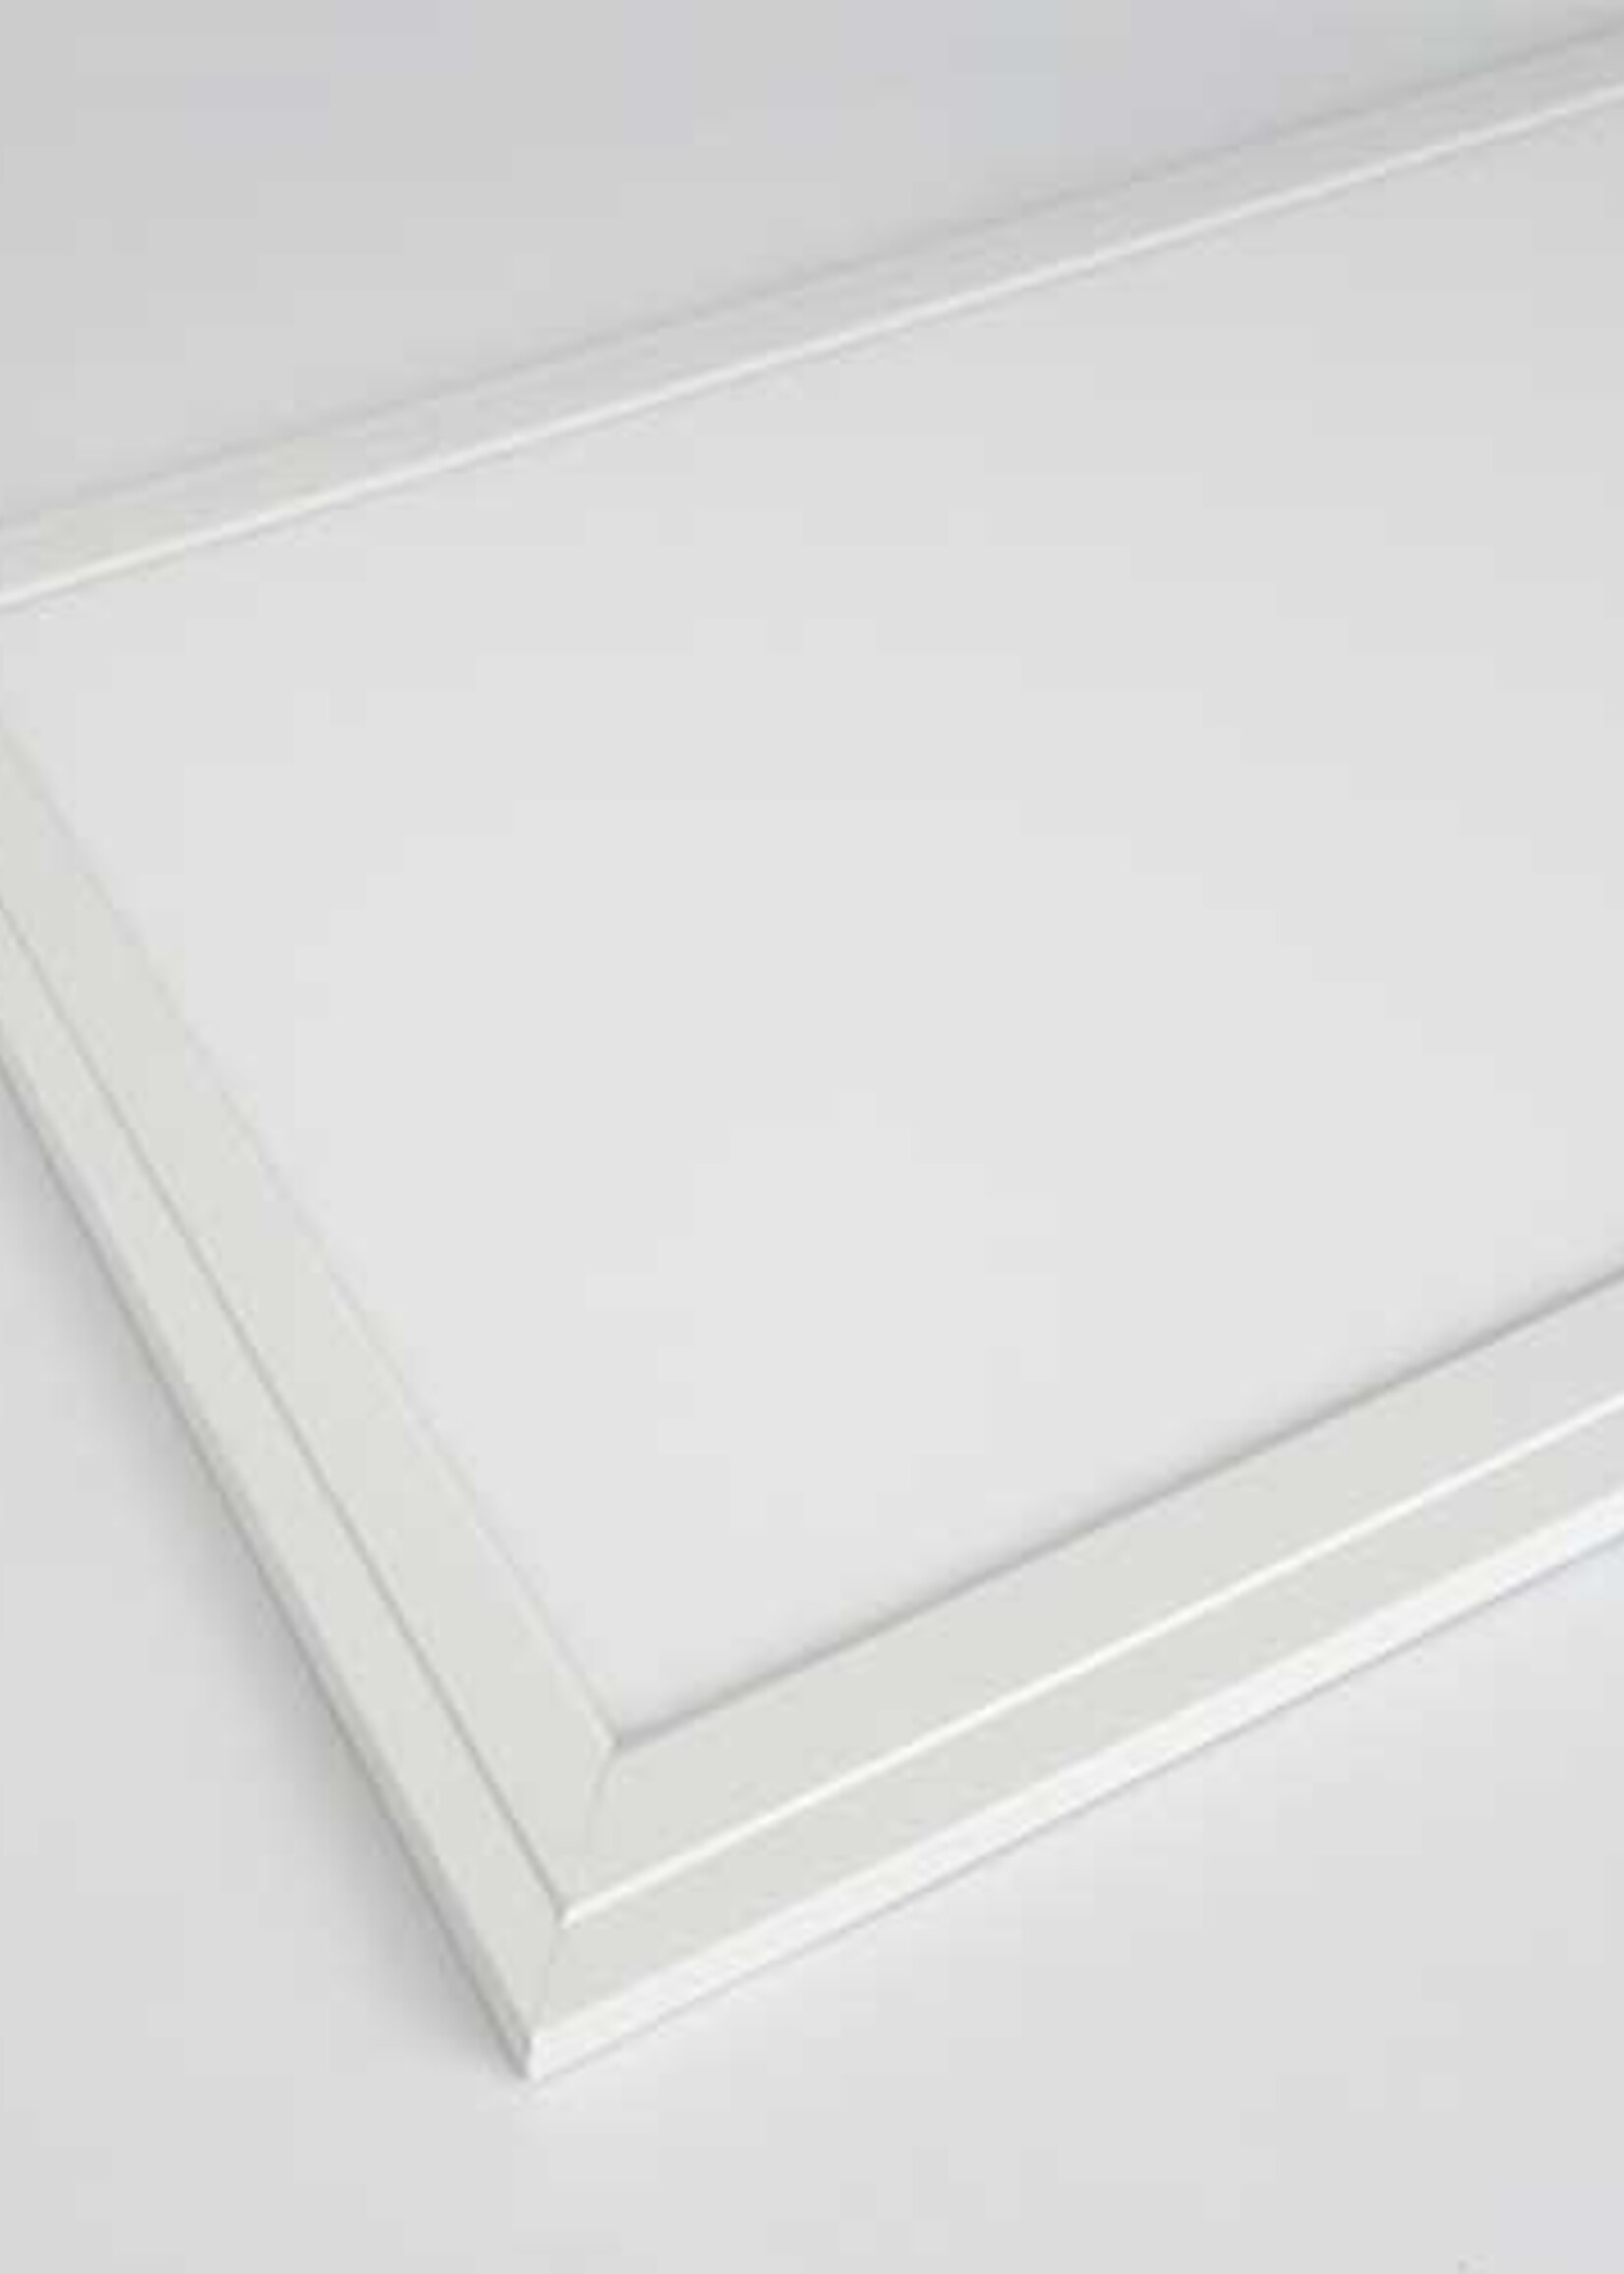 LEDWINKEL-Online LED Panel 30x60cm 24W 85lm/W Edge-lit